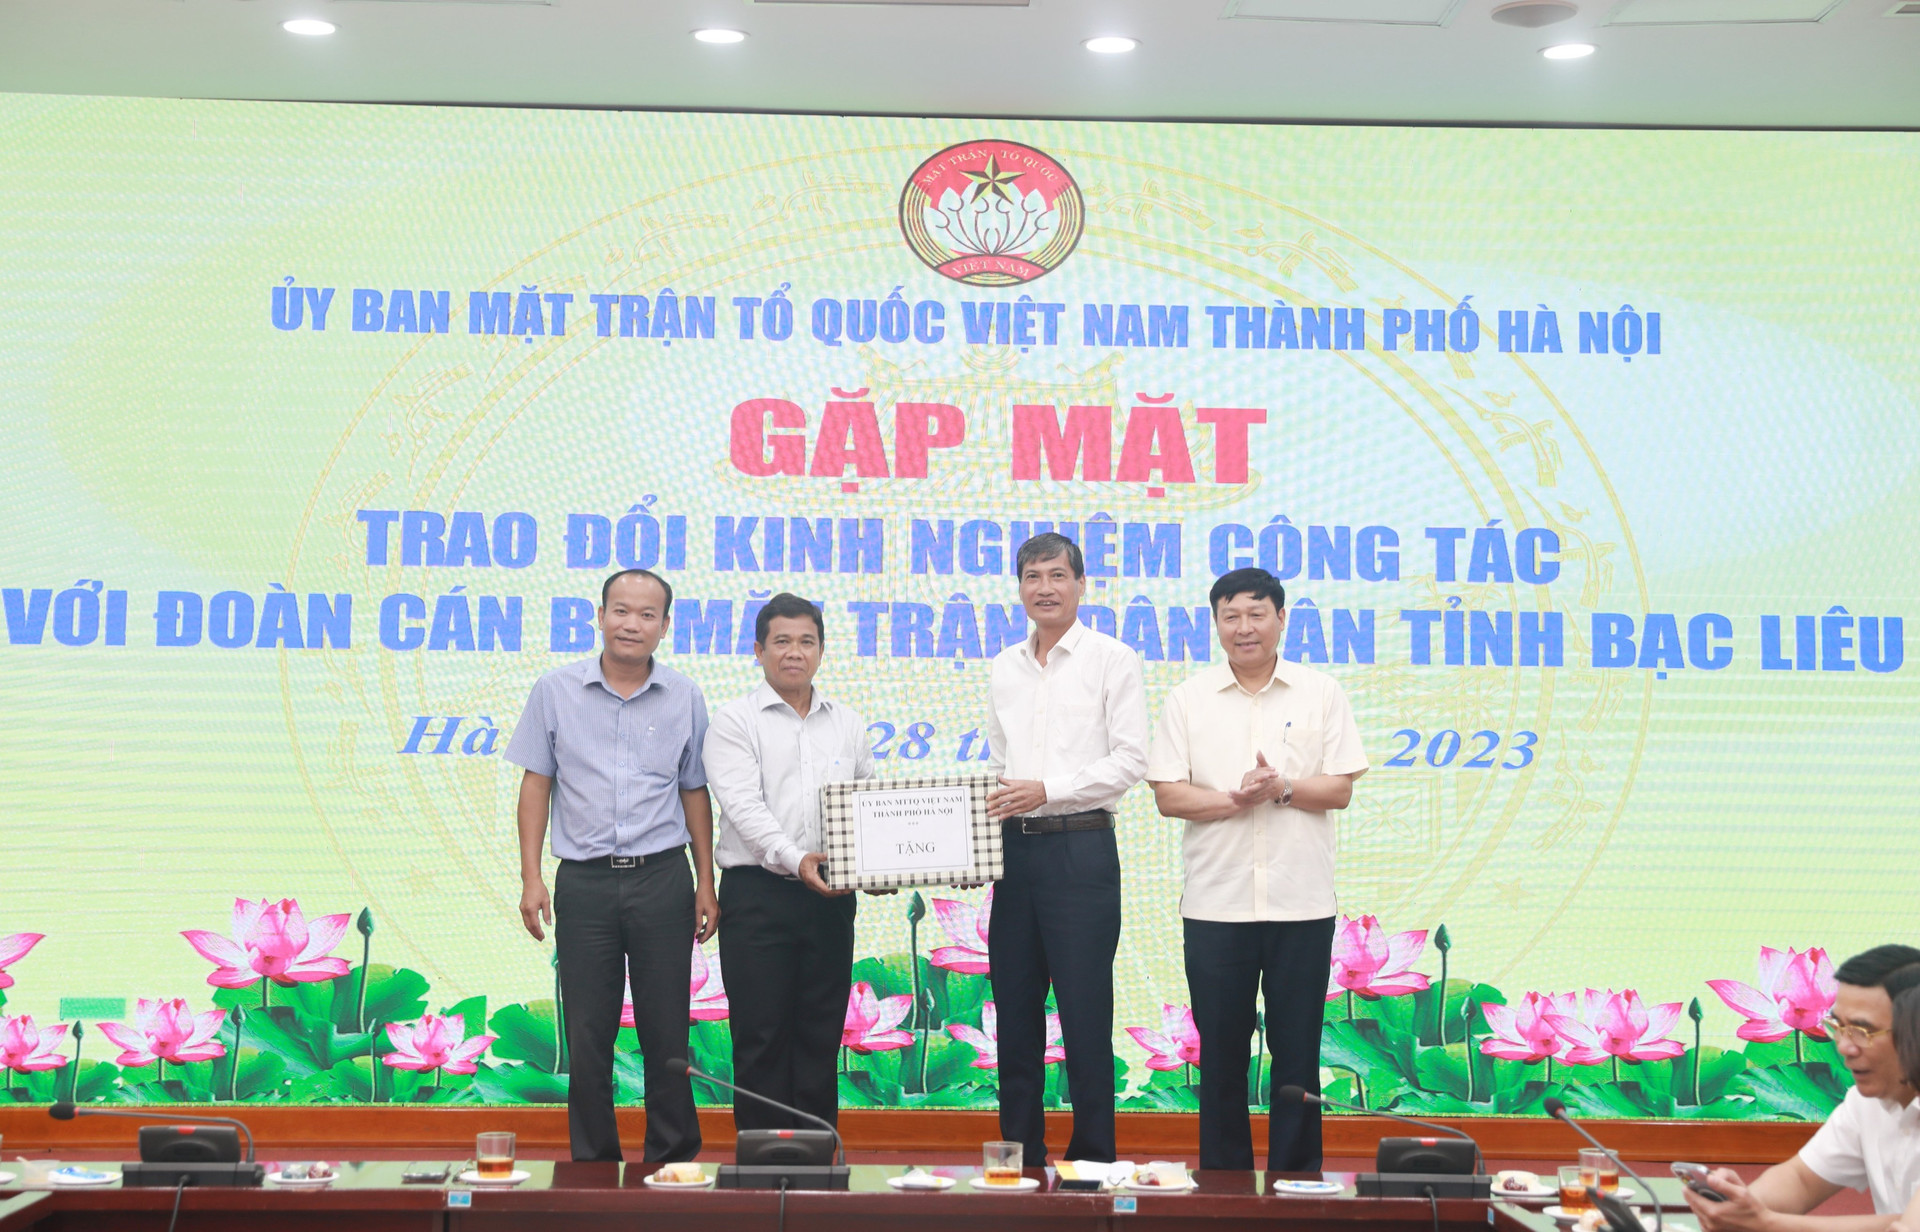 Ban Thường trực Ủy ban MTTQ Việt Nam thành phố Hà Nội trao tặng món quà thể hiện tình cảm của Mặt trận thành phố Hà Nội với Đoàn cán bộ tỉnh Bạc Liêu.